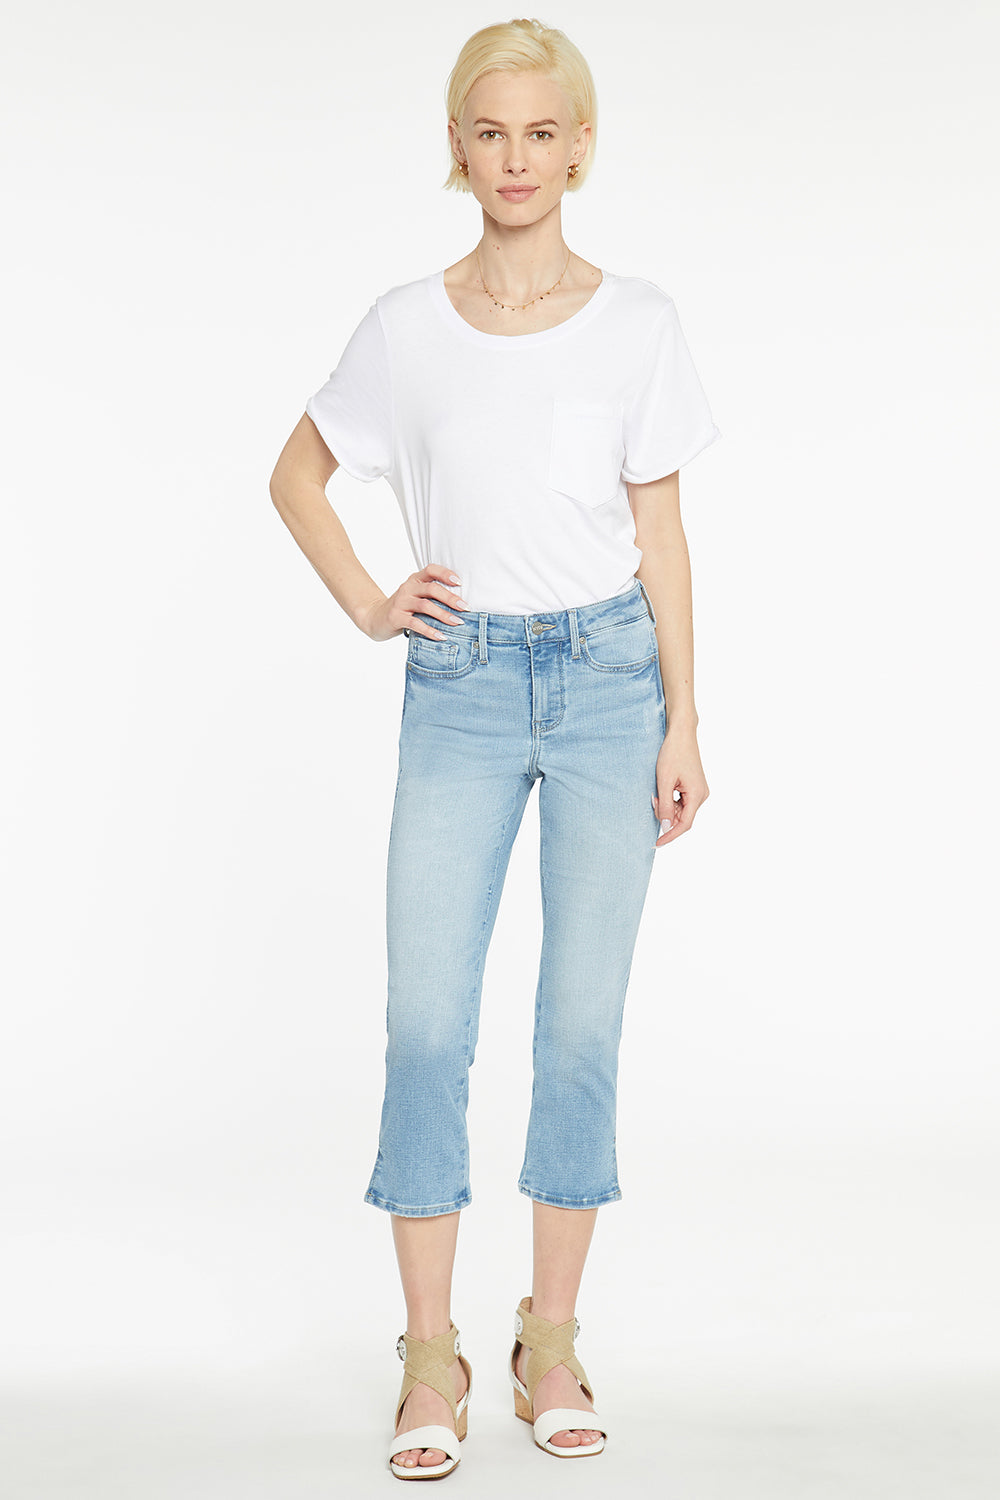 NYDJ Chloe Capri Jeans With Side Slits - Easley